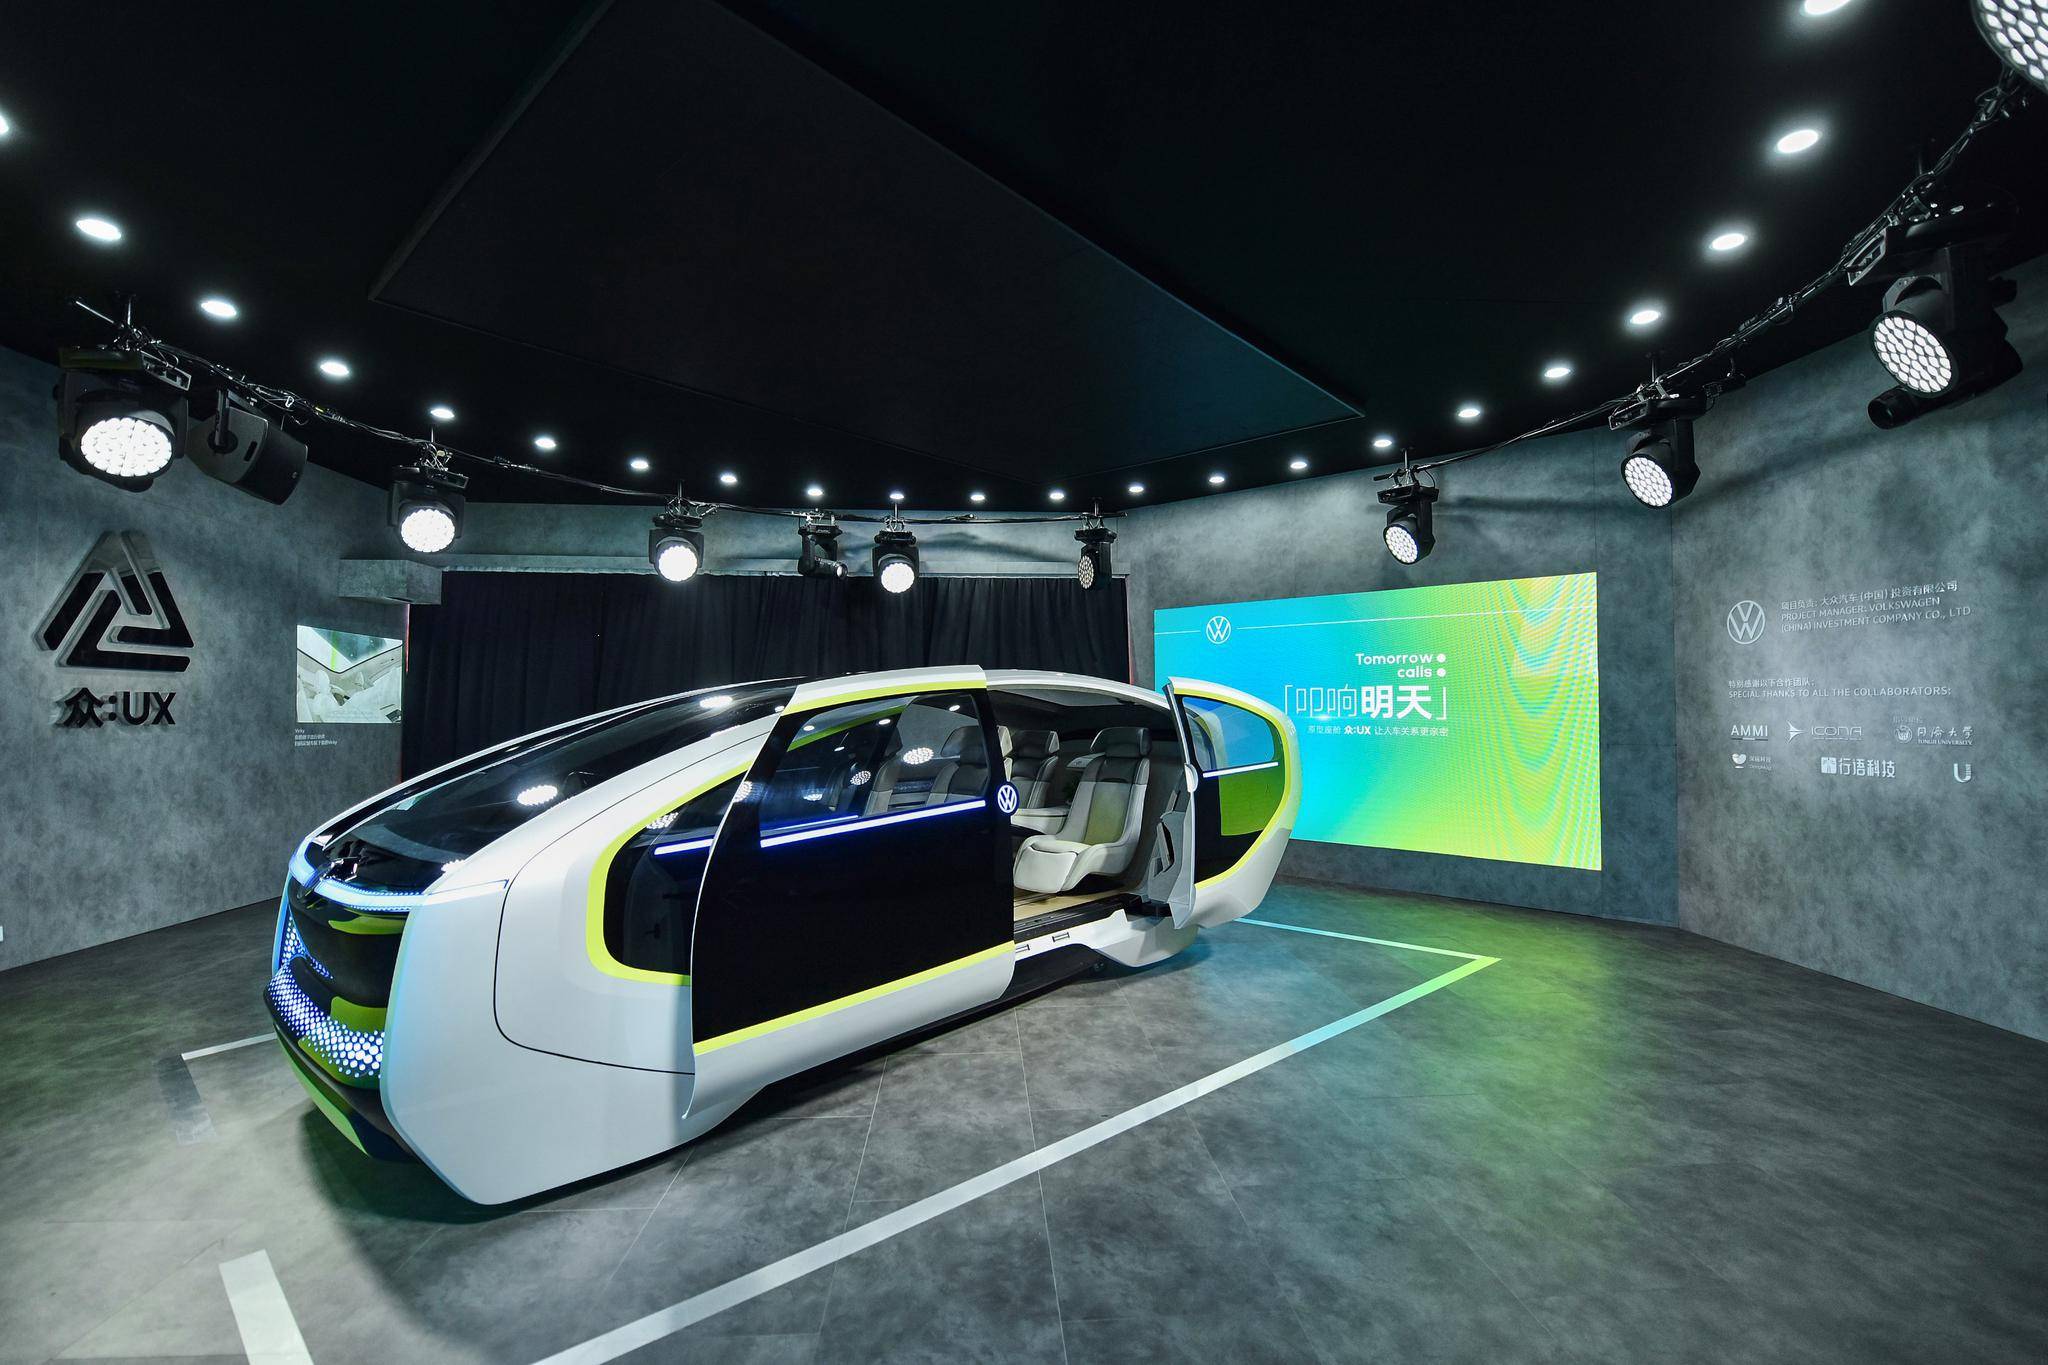 Dong Che Daily Tesla veröffentlicht das vollautomatisierte Fahrsystem Beta 9.0 / Audis Projekt für autonomes Fahren wird 2025 in Serie gehen / Xiaomi beschleunigt den Prozess der Autoherstellung - ec64 kquziih9528876